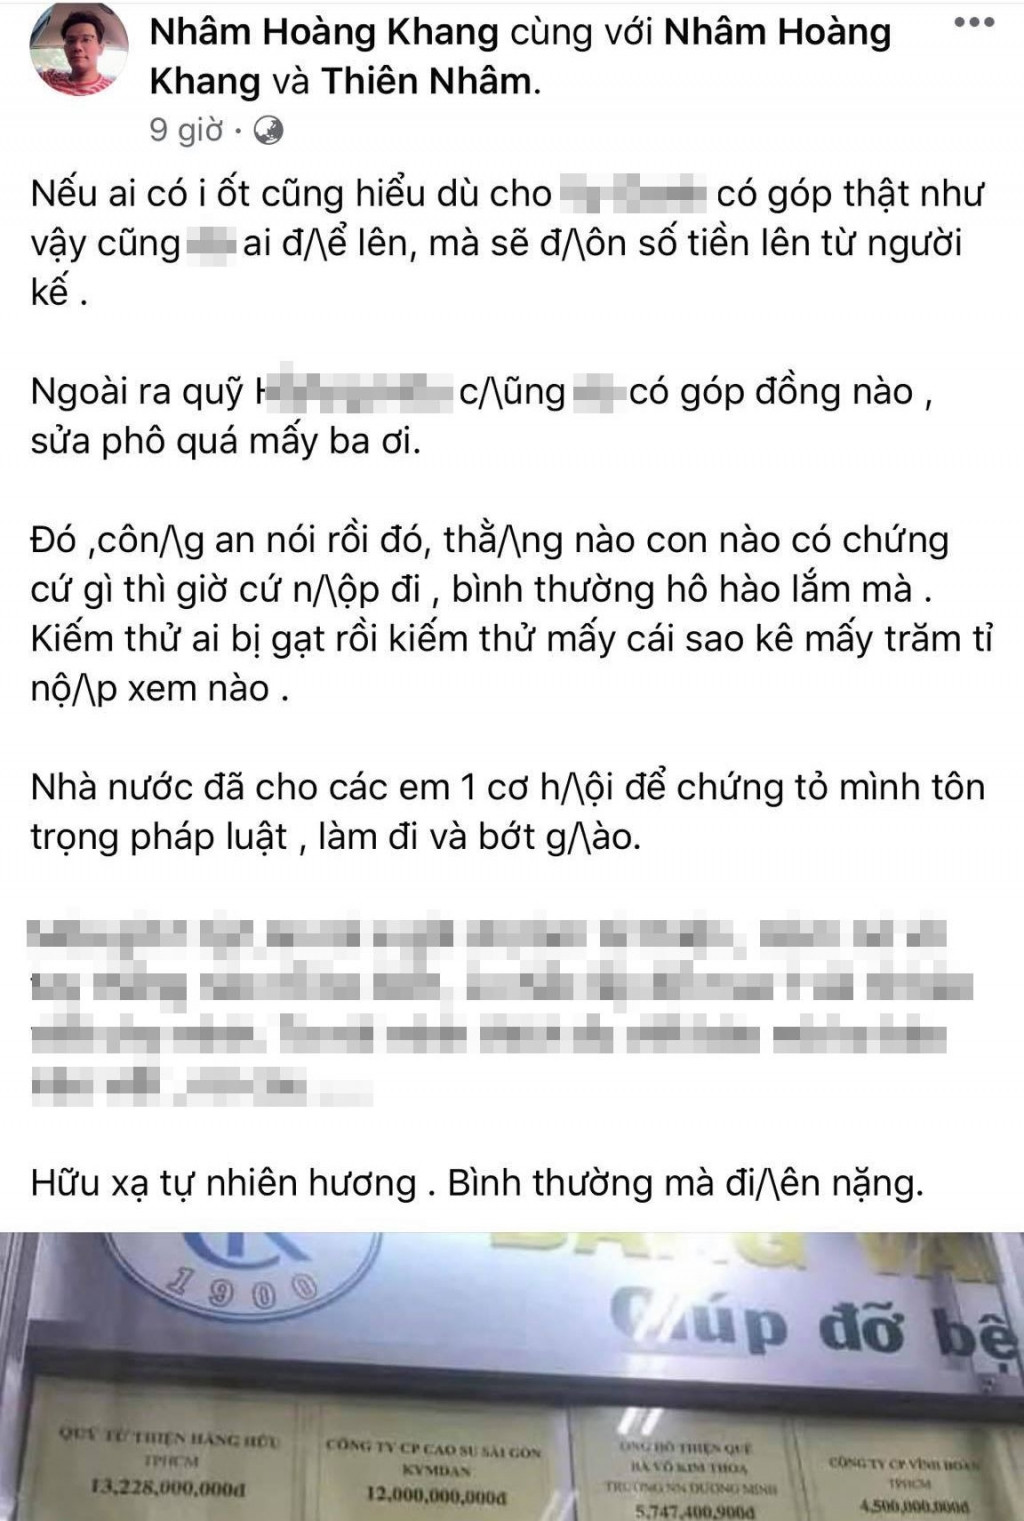 Chia sẻ cuối cùng của Nhâm Hoàng Khang trên mạng xã hội trước khi bị bắt